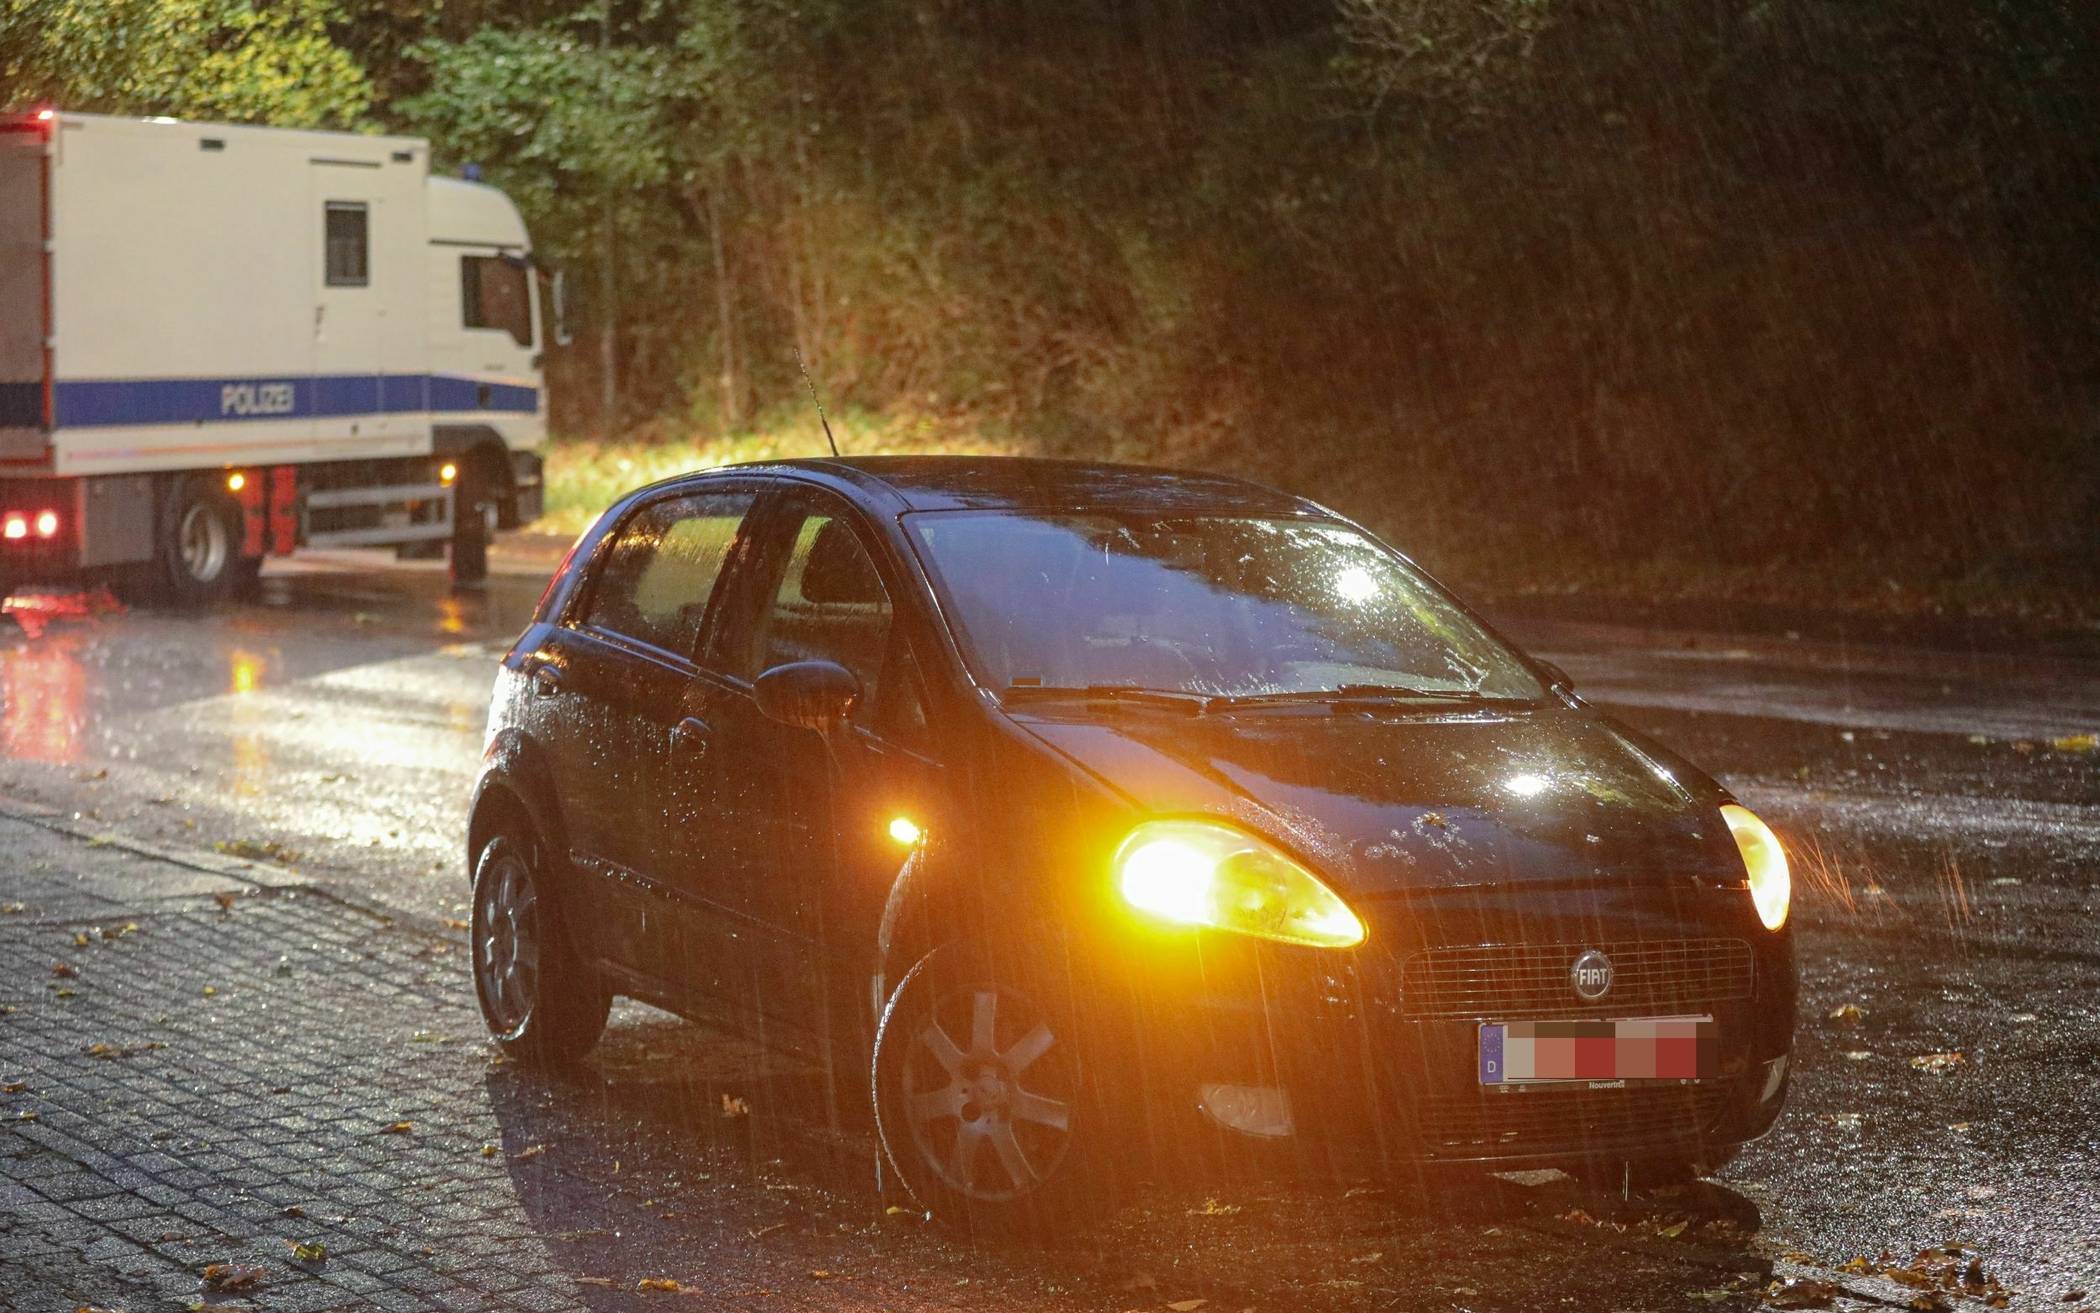 Bilder: Substanz löst Polizei-Einsatz in Wuppertal aus​